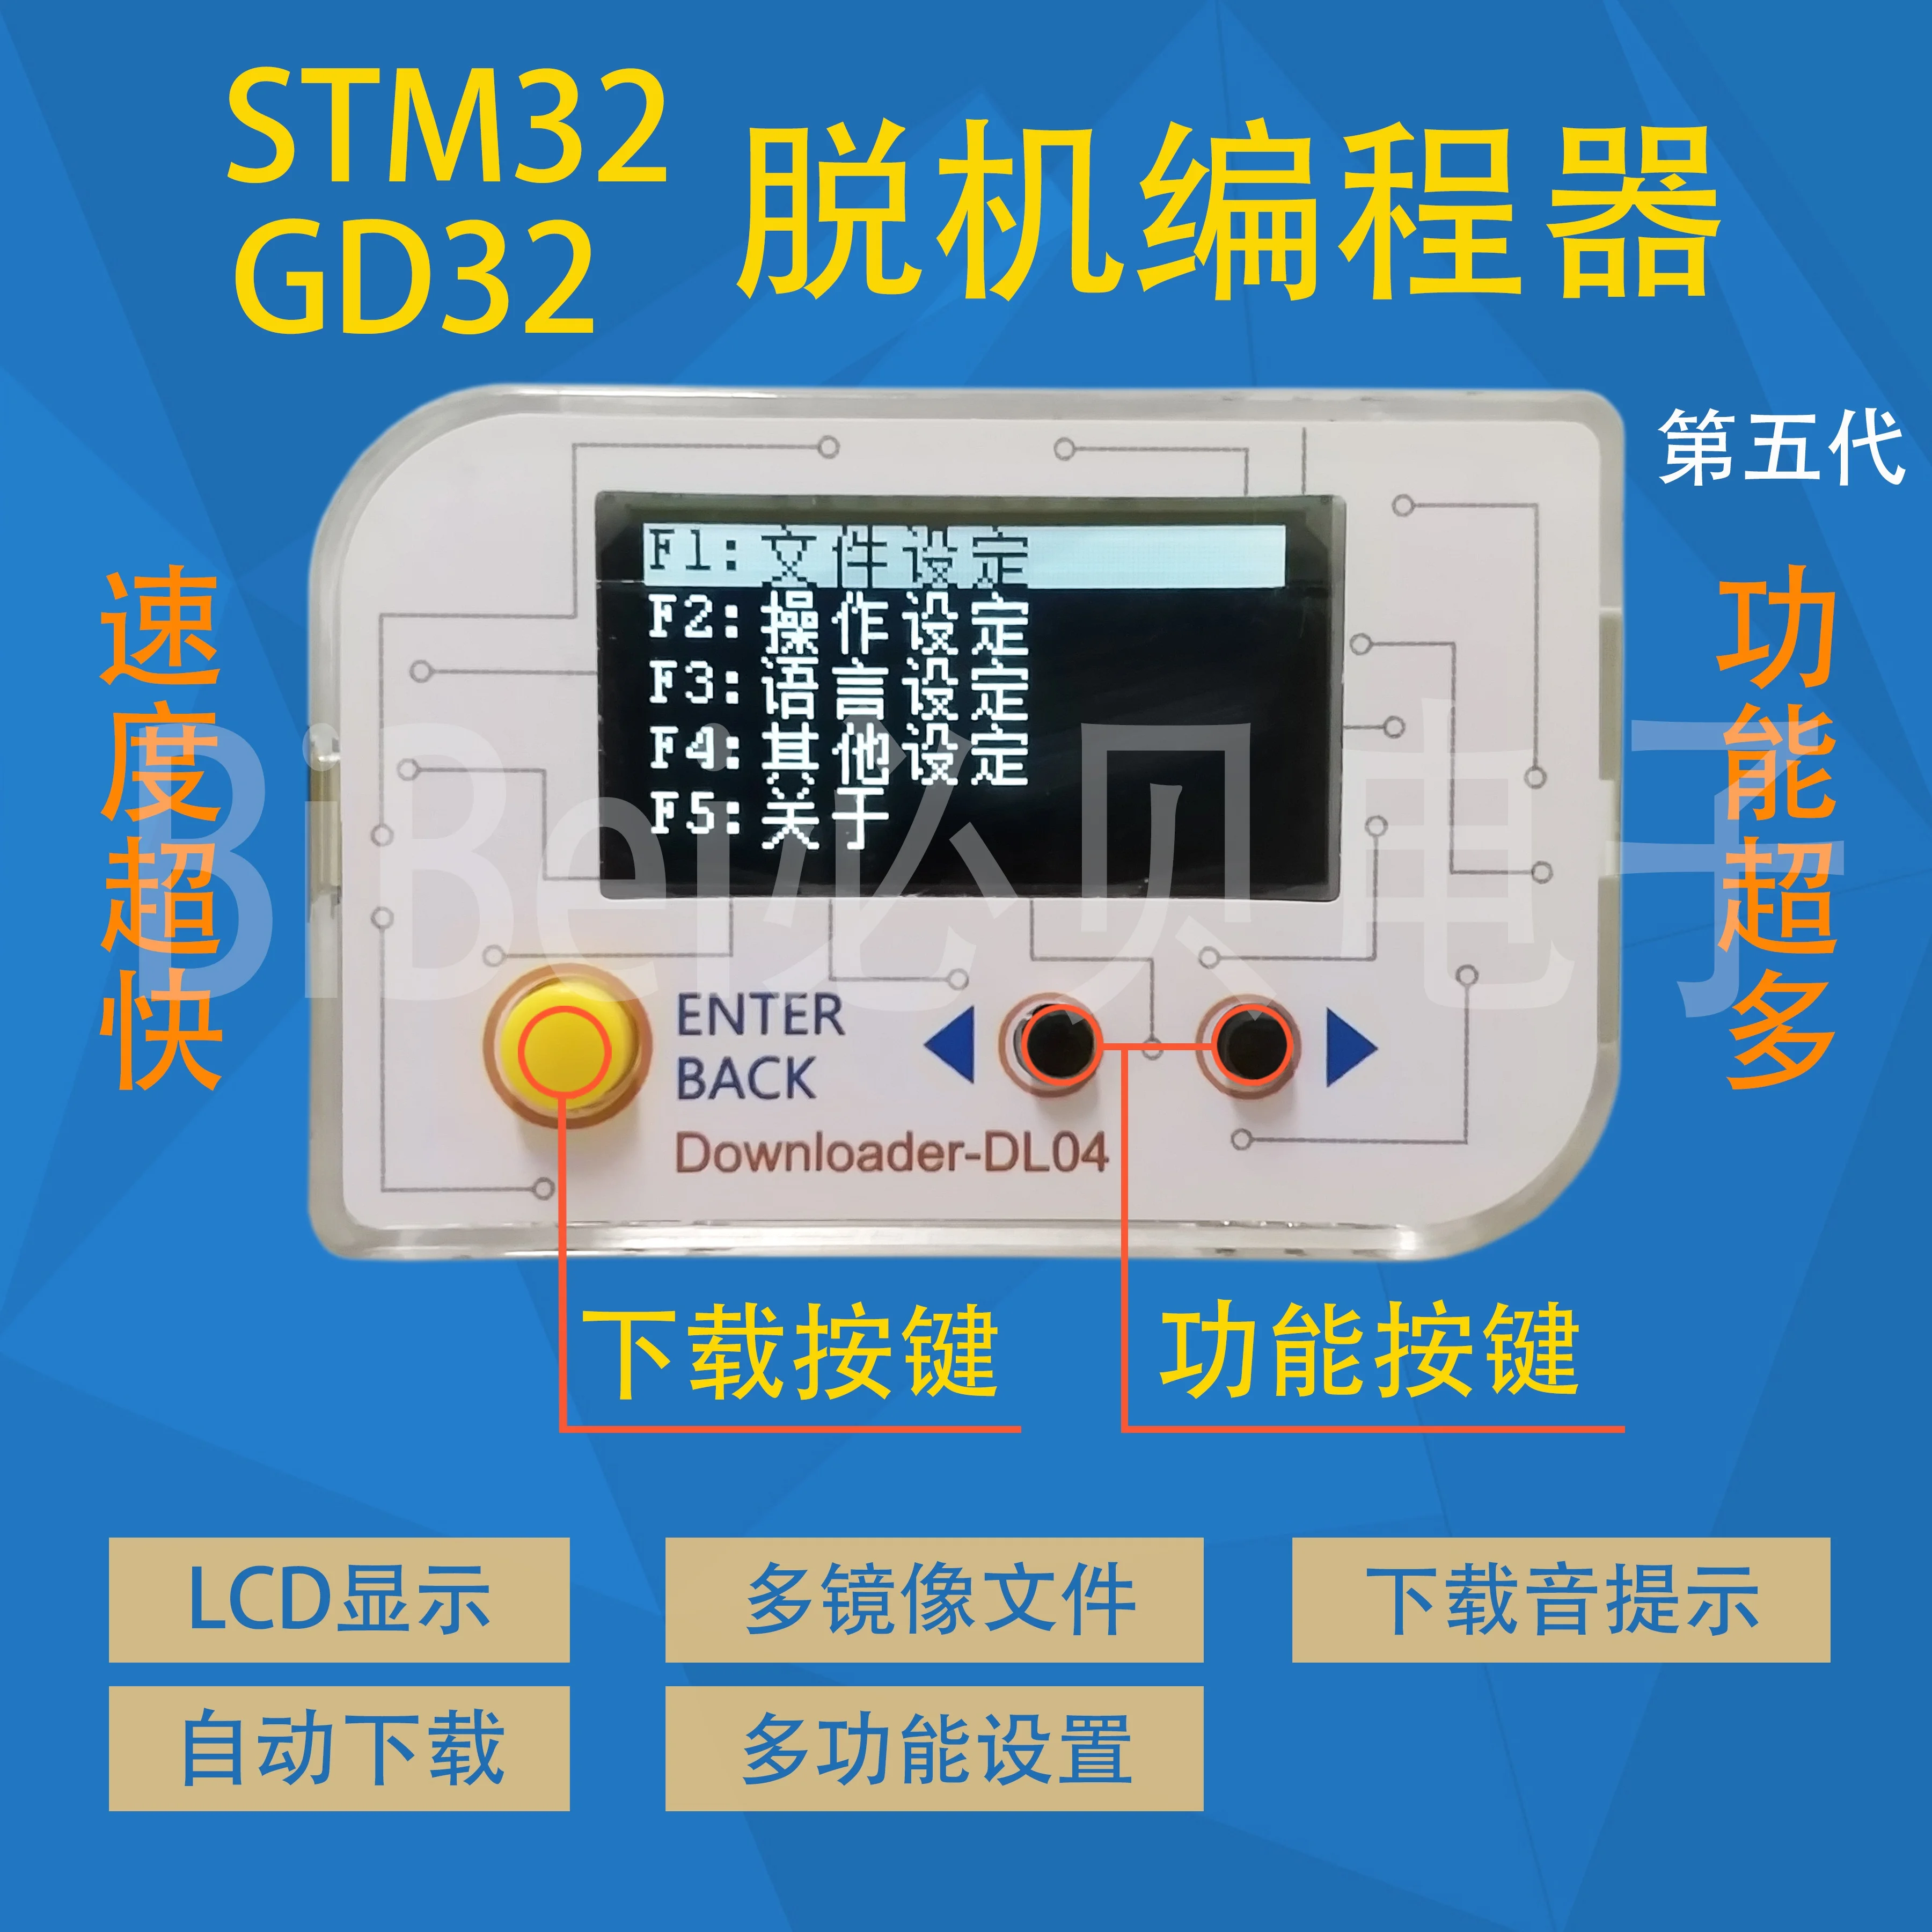 STM32 GD32 HK32 MM32 APM32 Offline Offline Download Programming Burning Burner